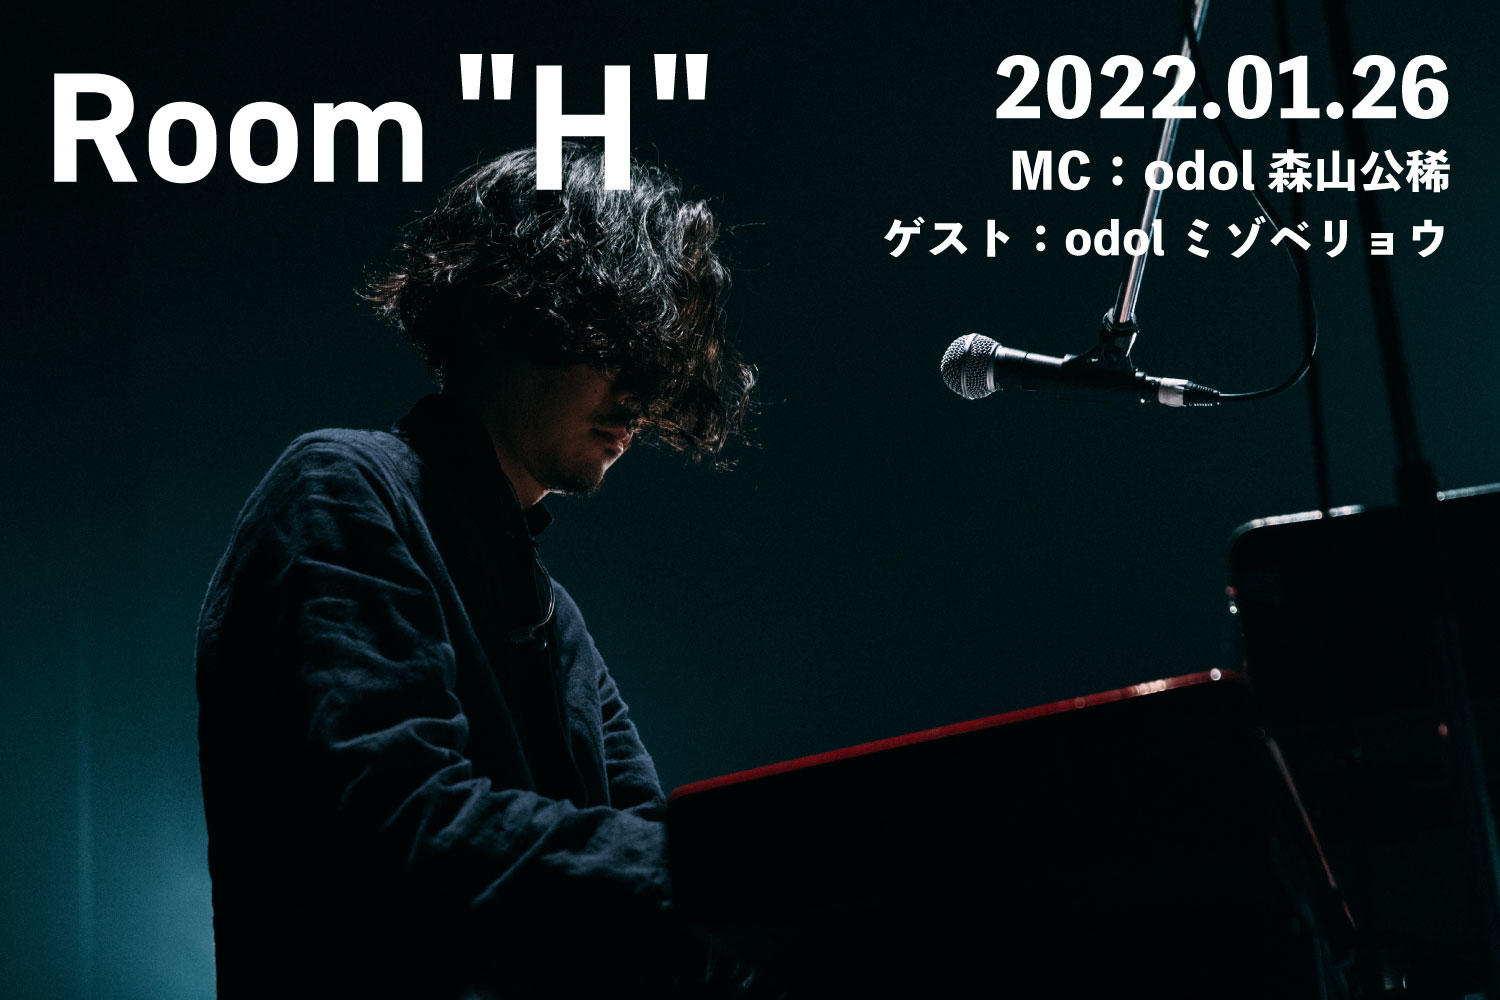 【読むラジオ】MC：森山公稀(odol) JR東海の新CMに書き下ろした新曲「望み」を紹介「Room H」 -2022.01.26-